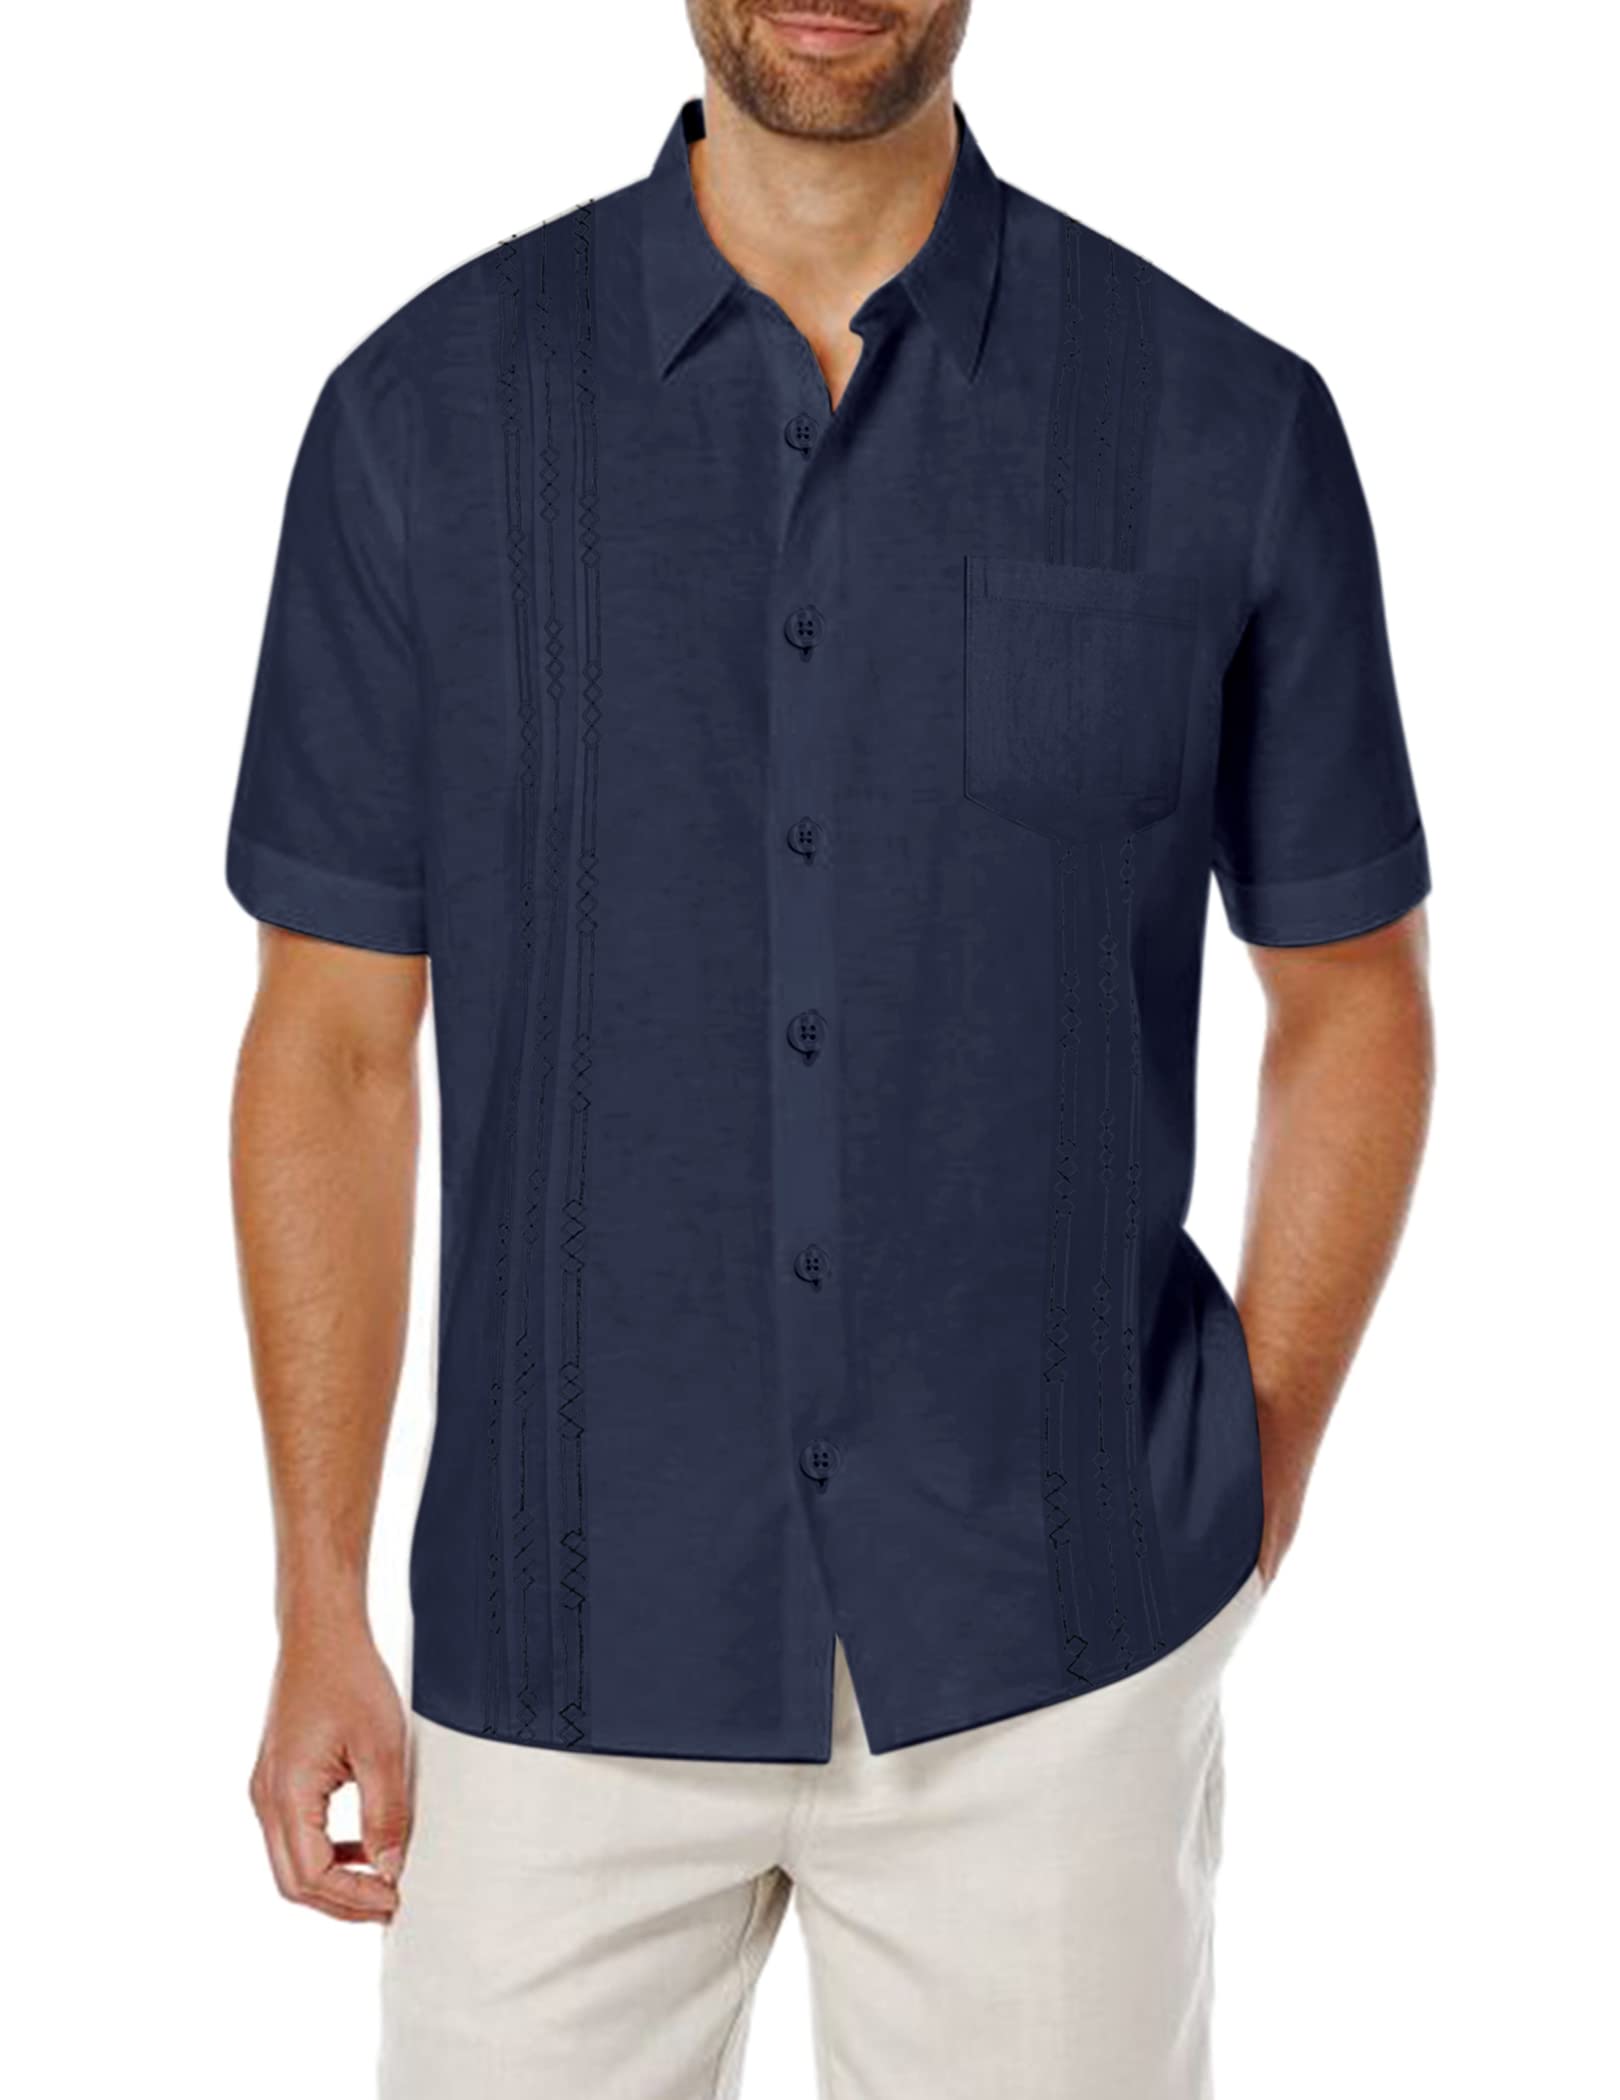 COOFANDY Men's Short Sleeve Linen Shirt Cuban Beach Tops Pocket Guayabera  Shirts XX-Large 1 - Navy